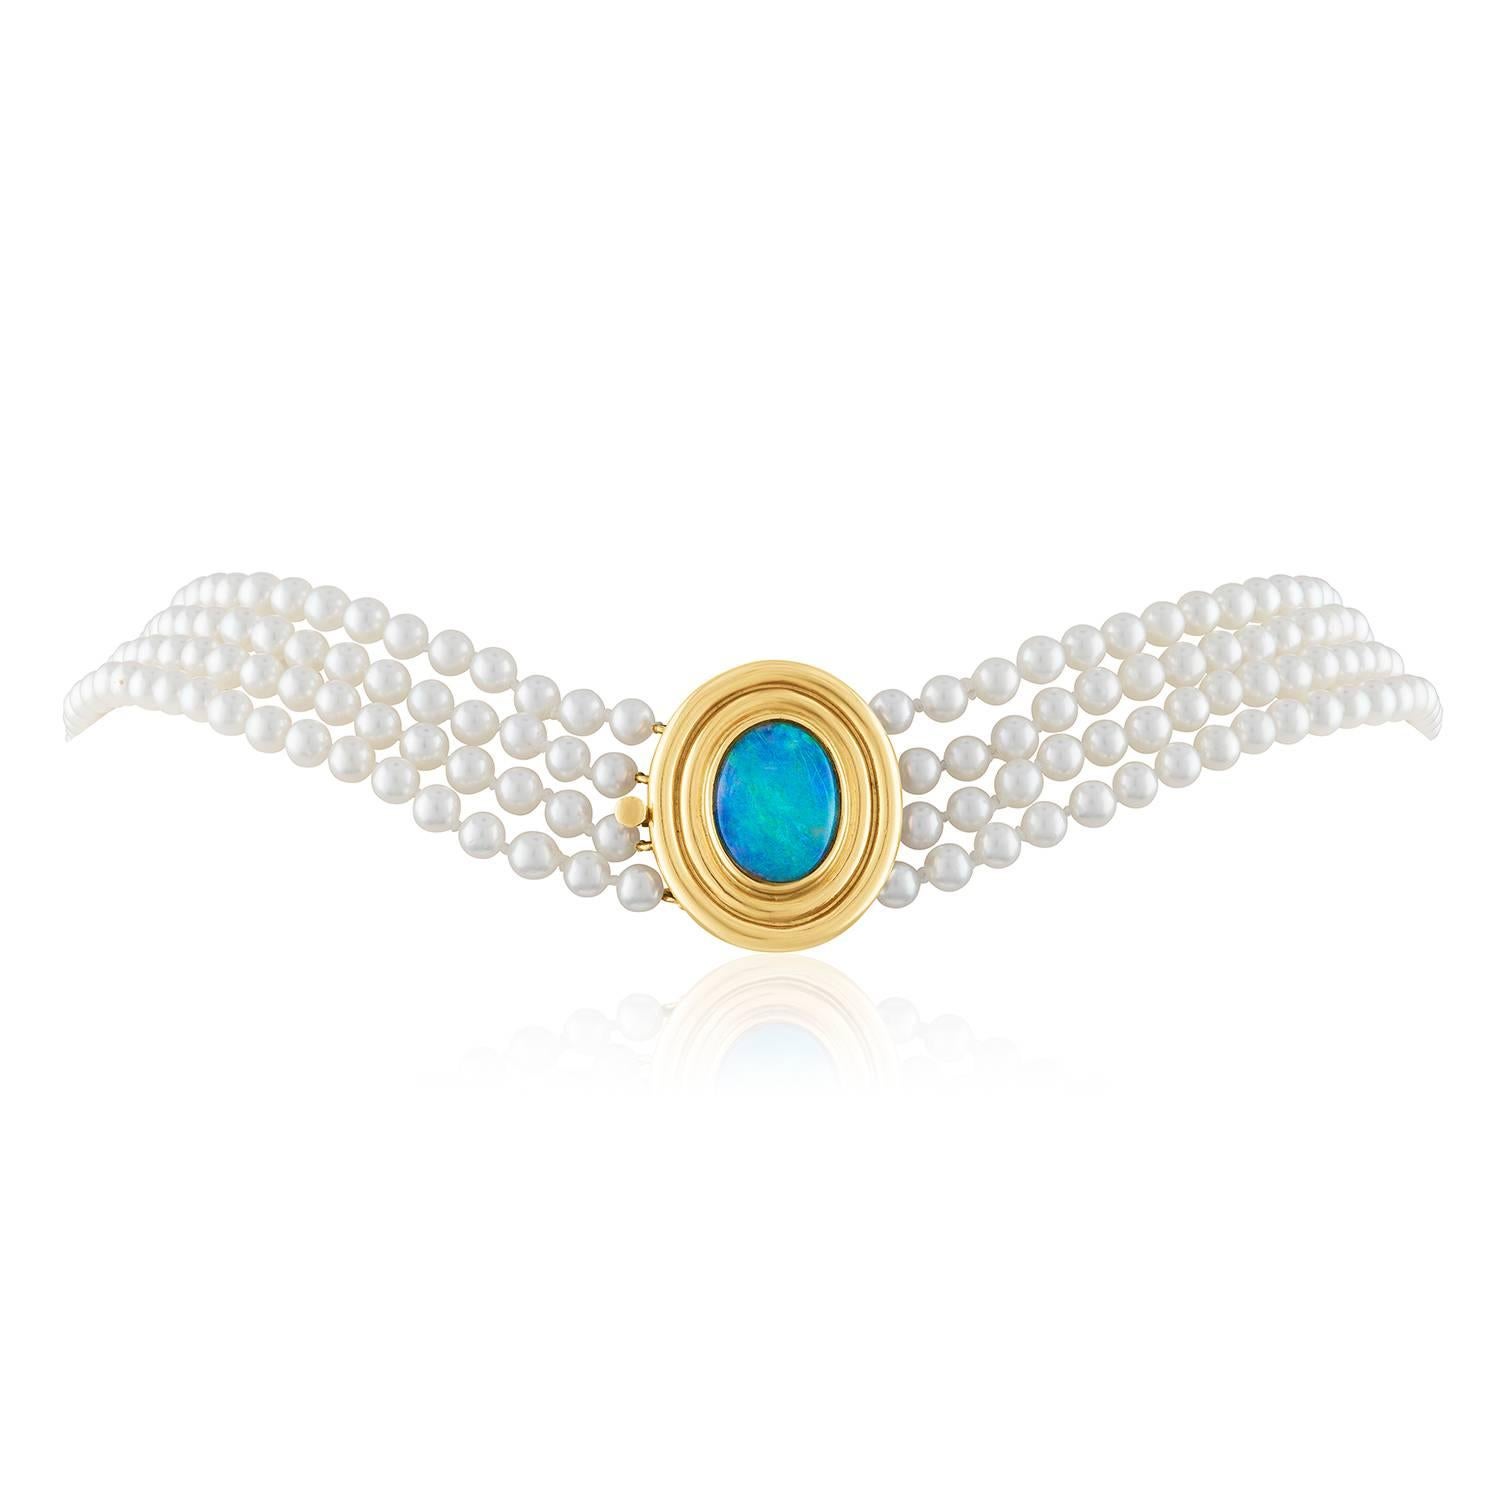 Sehr klassische 4-reihige Perlenkette
Die Schließe ist 14K Gelbgold
Die Perlen messen 4.0mm
Die Perlen sind Akoya-Zuchtperlen.
Die Schließe hat einen australischen Opal
Die Halskette ist 16.75